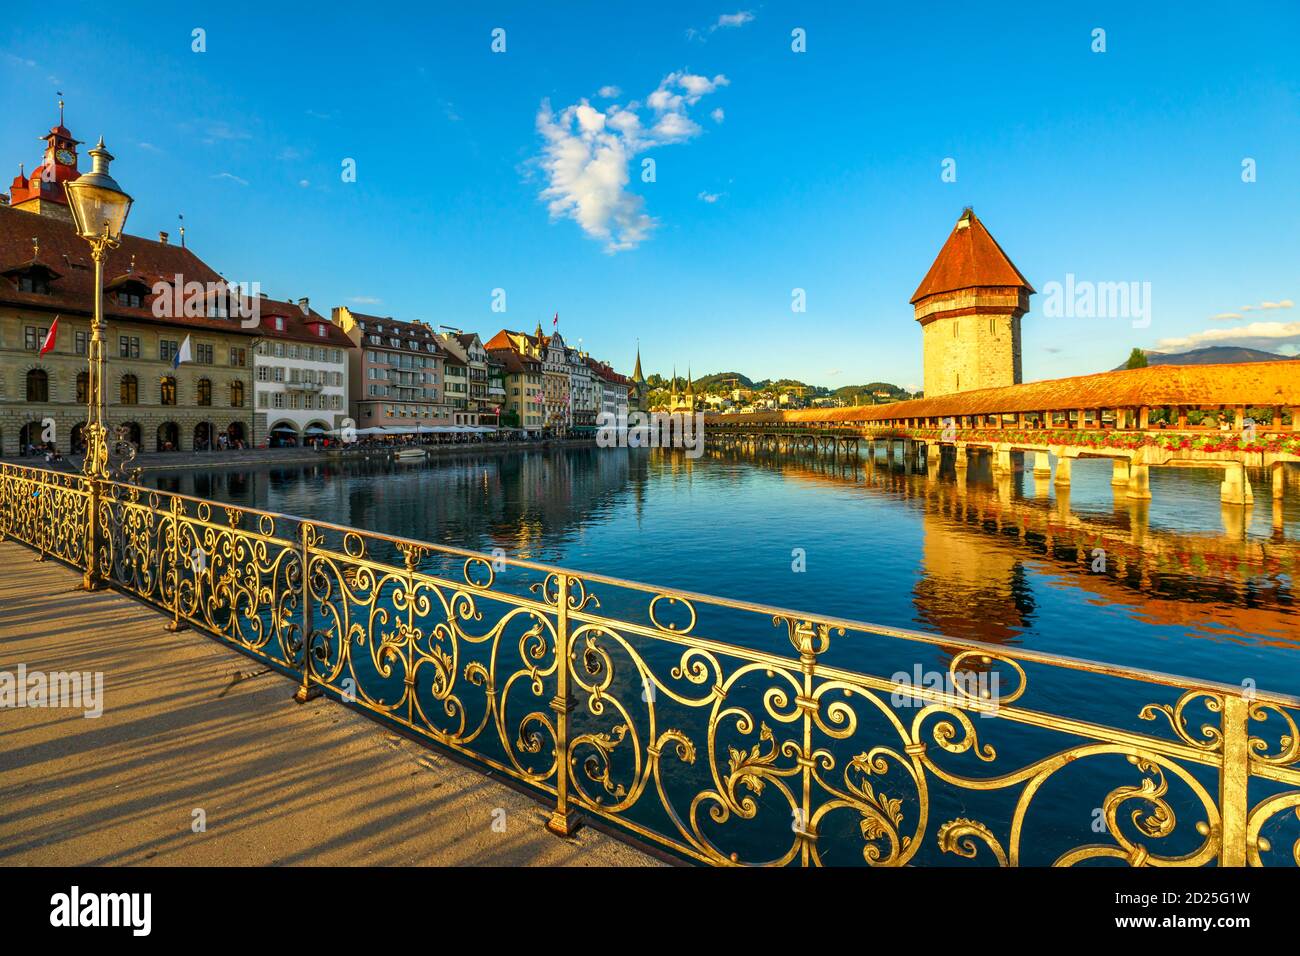 Stadtbild von Luzern am Vierwaldstättersee, Schweiz bei Sonnenuntergang. Historische überdachte hölzerne Fußgängerbrücke, Kapellebrücke mit Wasserturm reflektieren auf Reuss Stockfoto